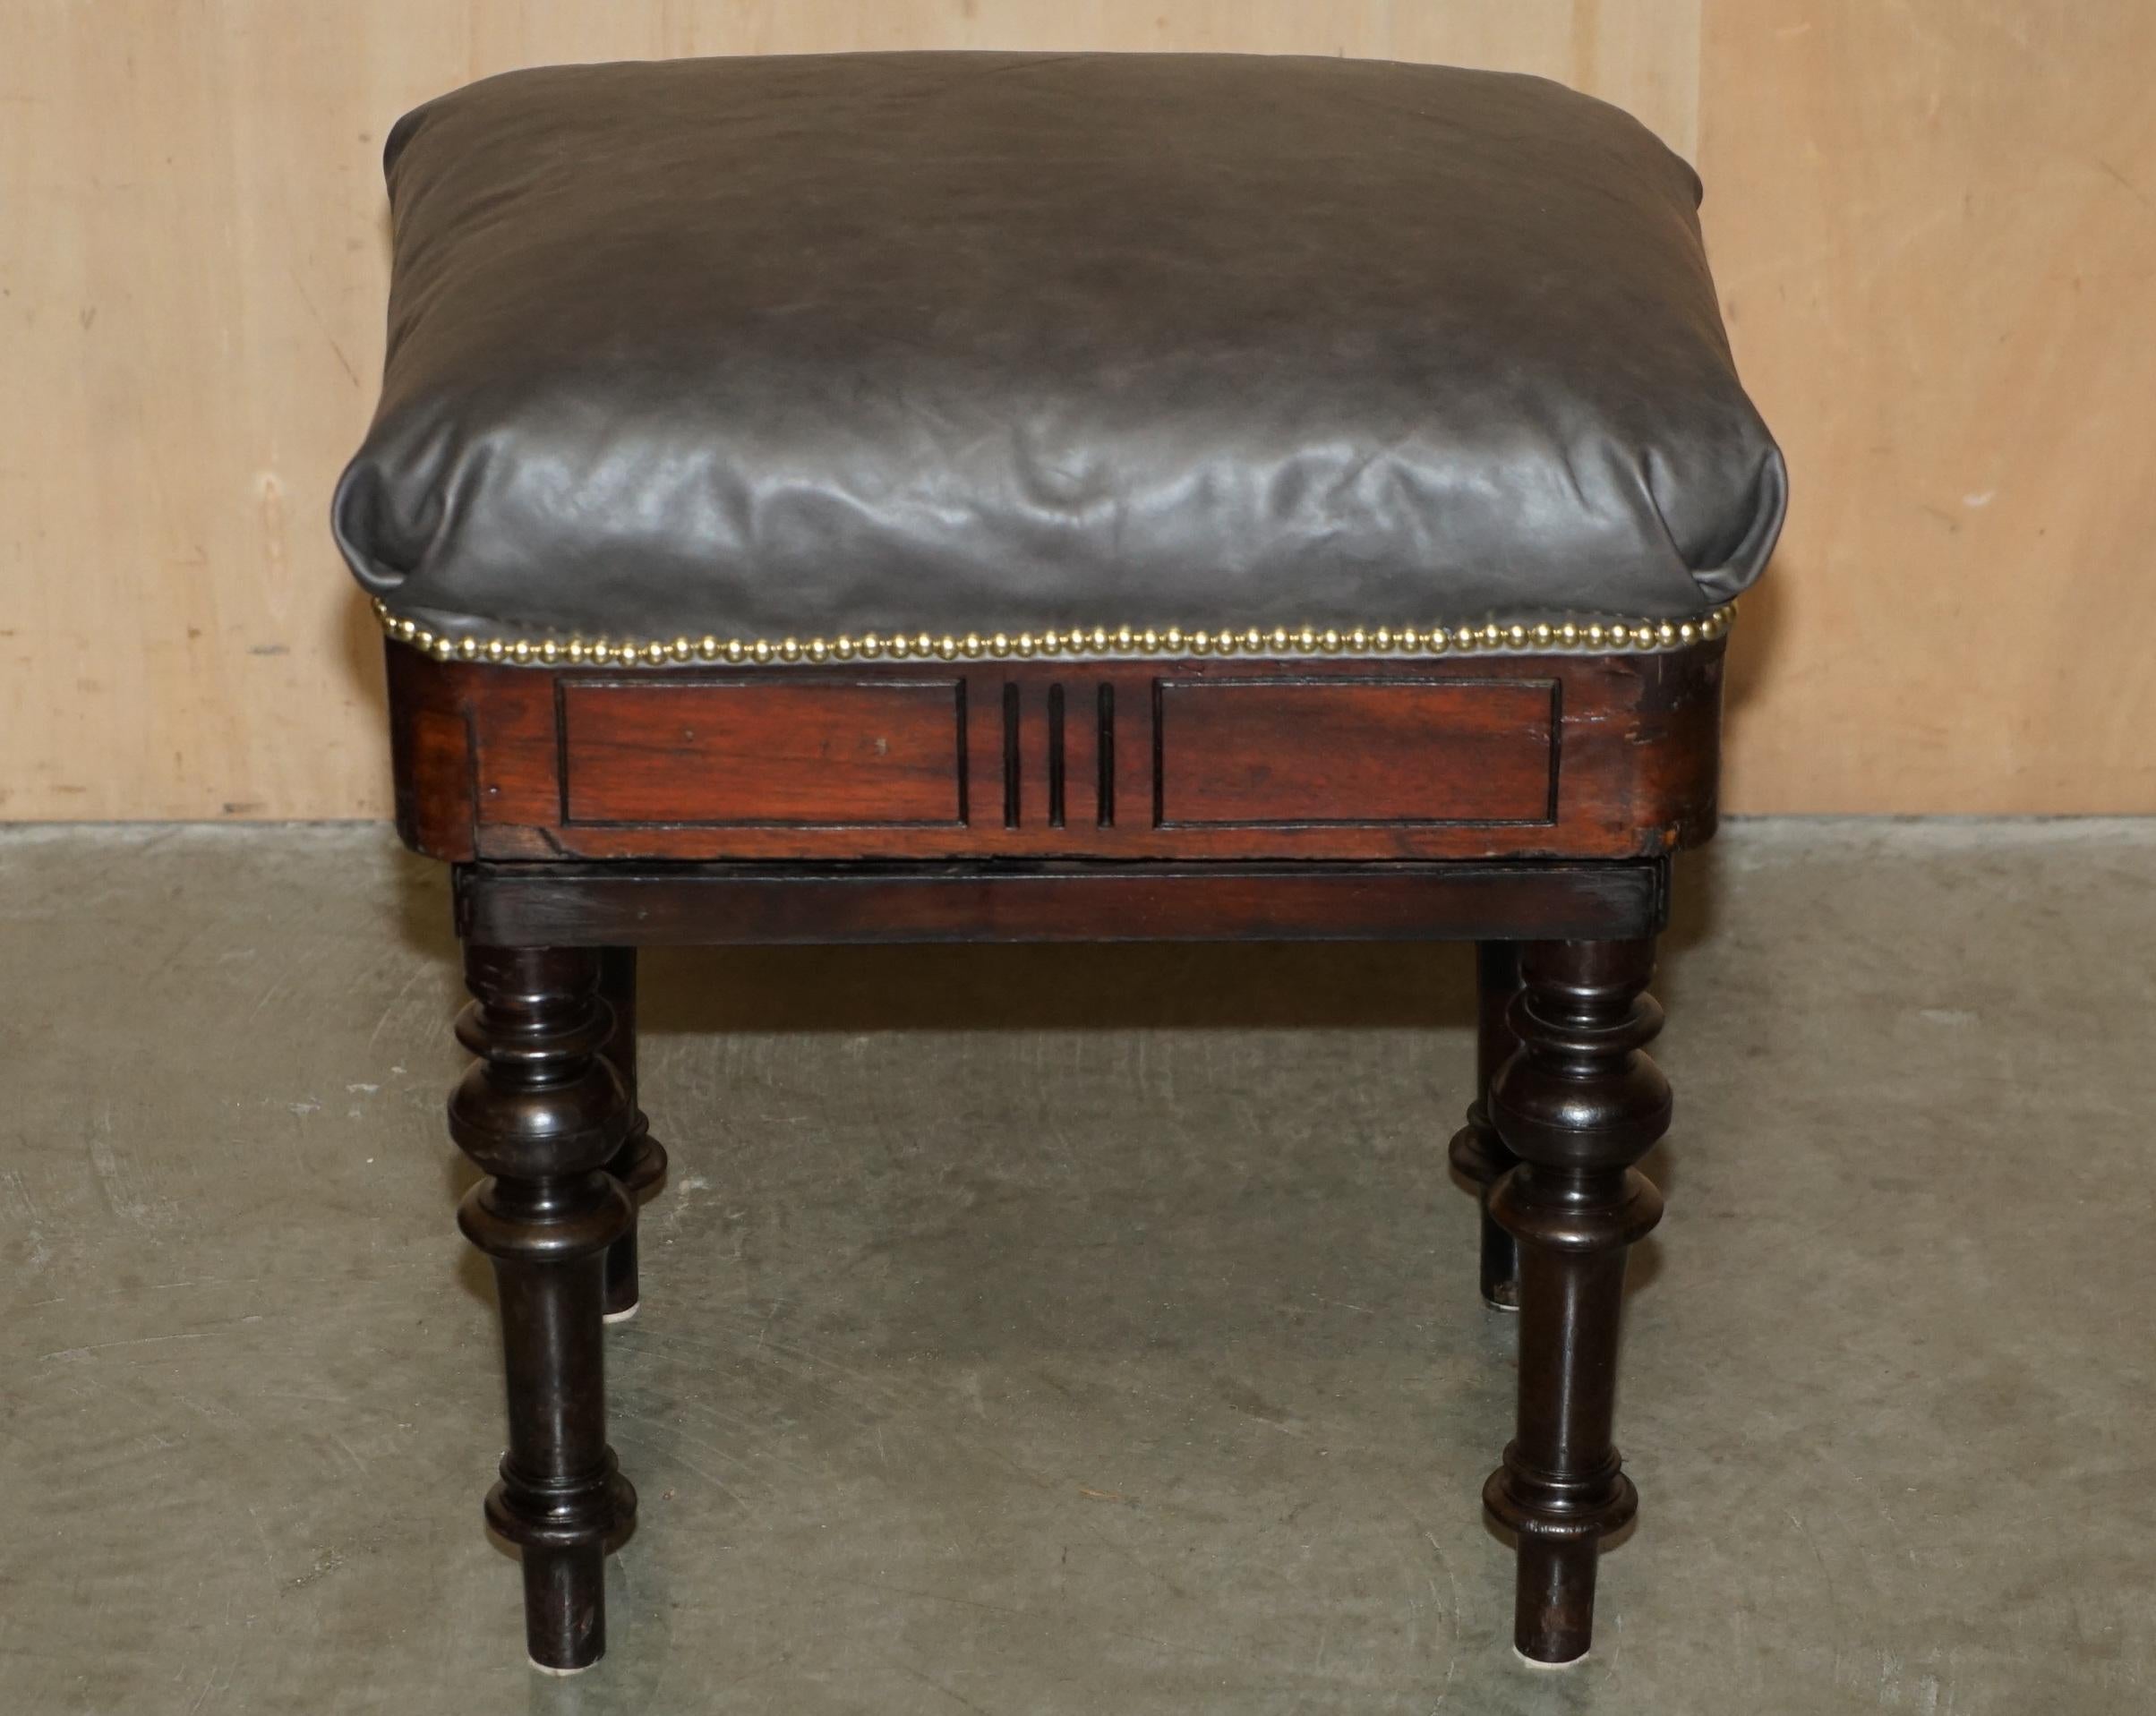 Royal House Antiques

Royal House Antiques freut sich, diesen schönen originalen viktorianischen Brooks Klavierhocker im Campaigner-Stil mit abnehmbaren Beinen und neuer grauer Lederplatte zum Verkauf anbieten zu können.

Ein sehr gut aussehender,